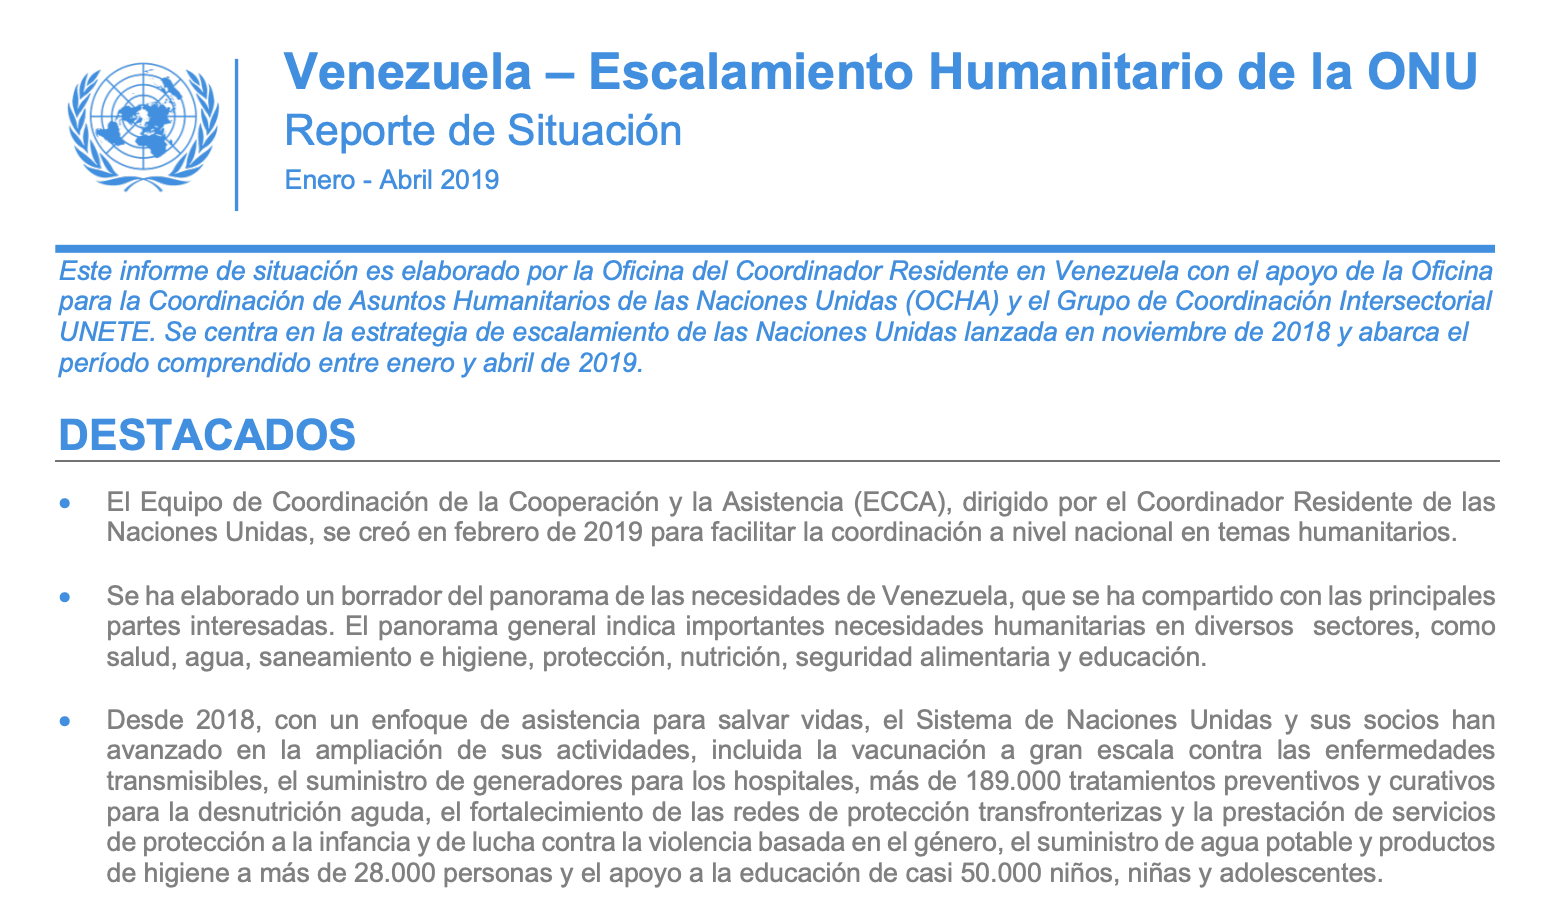 Comunicado de las organizaciones de la sociedad civil venezolana en relación al Reporte de Situación sobre el escalamiento humanitario de la ONU en Venezuela